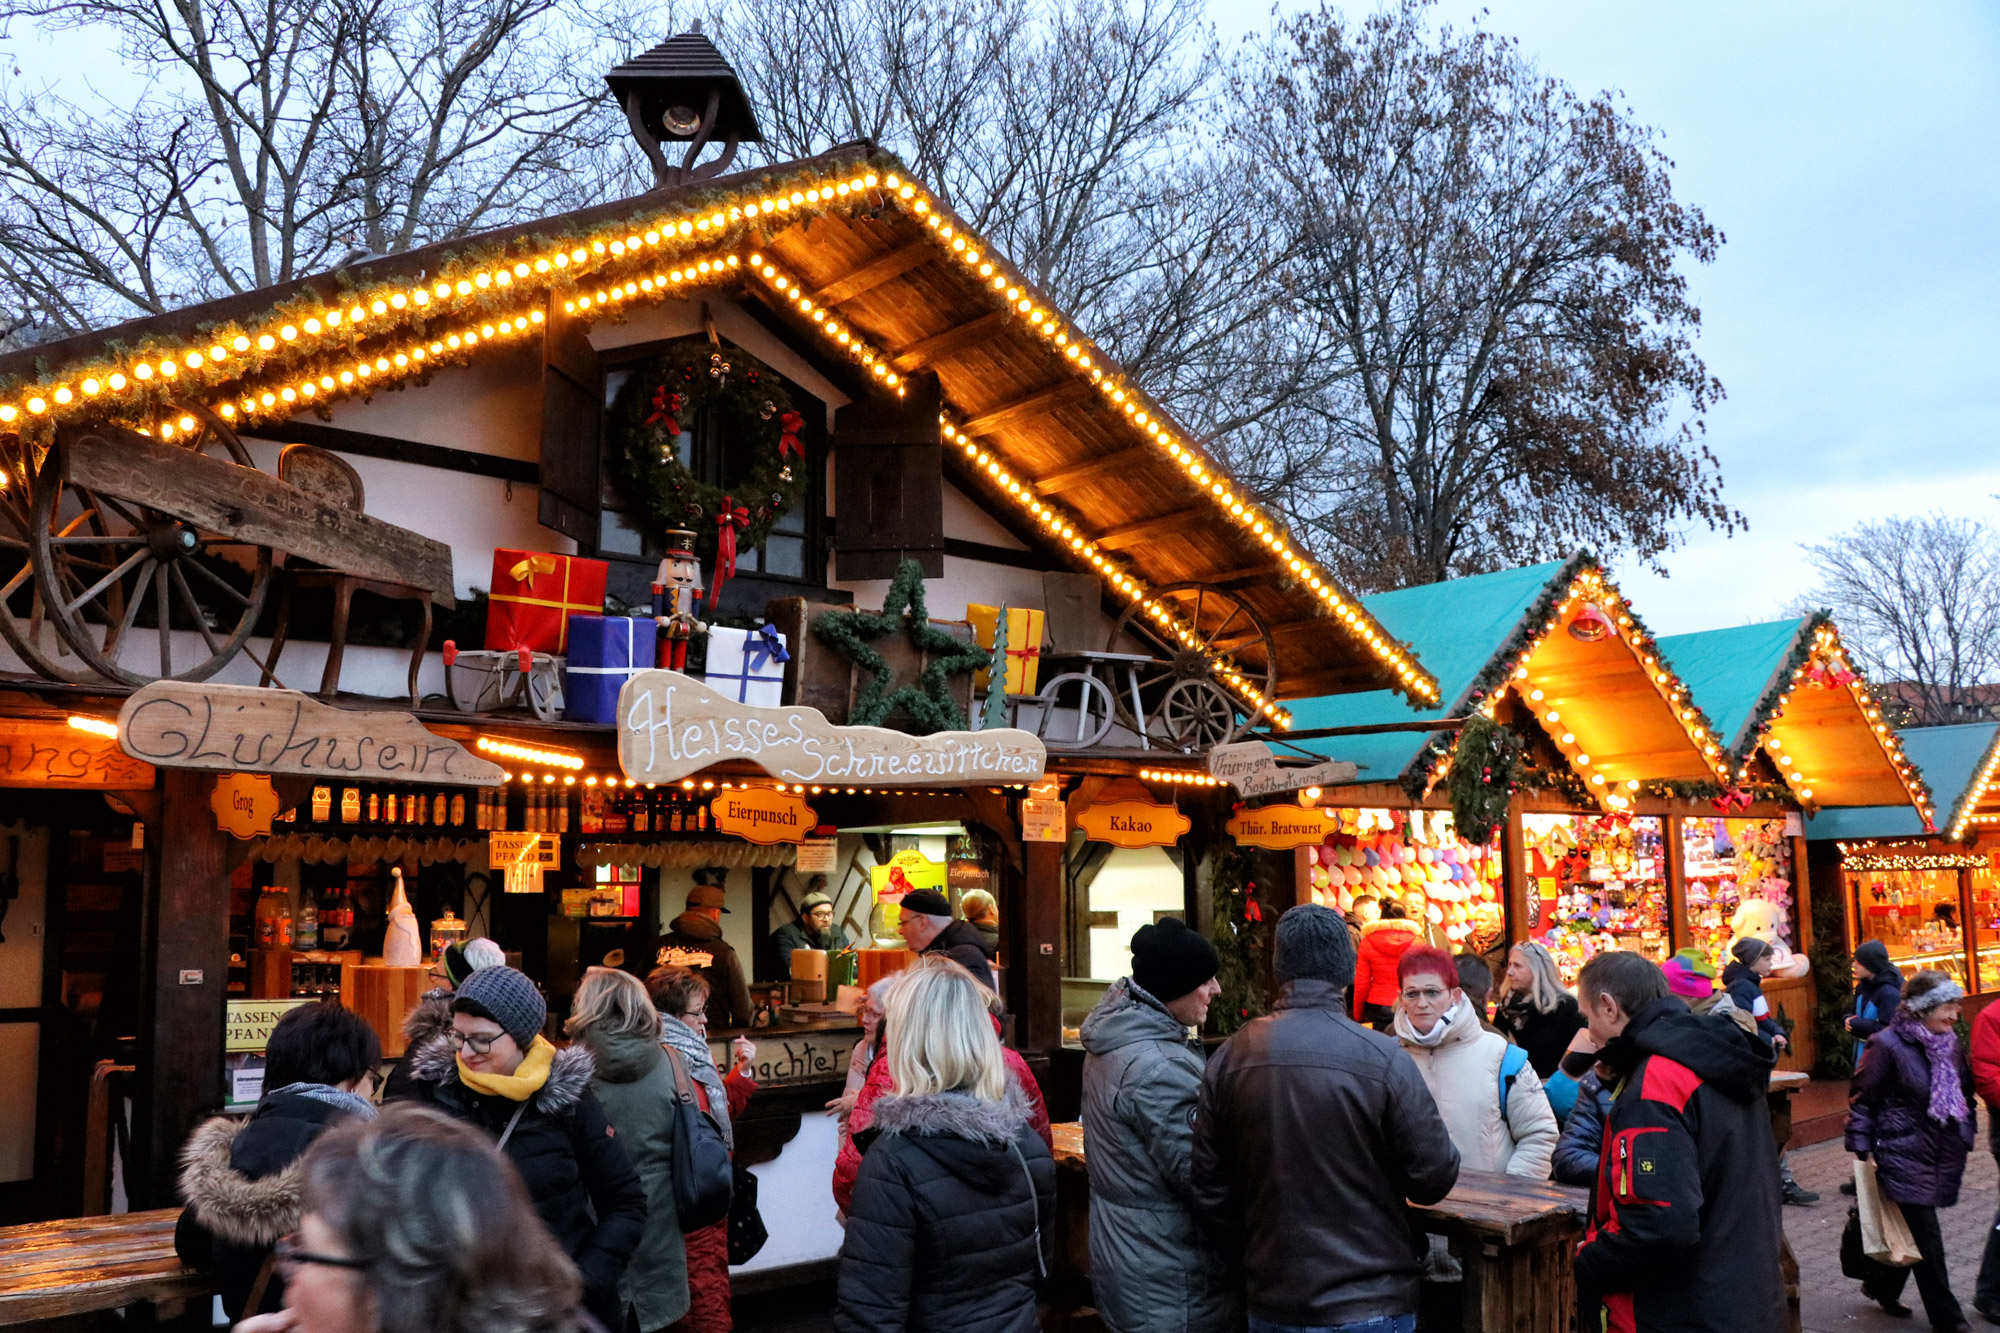 Kerstmarkt van Erfurt